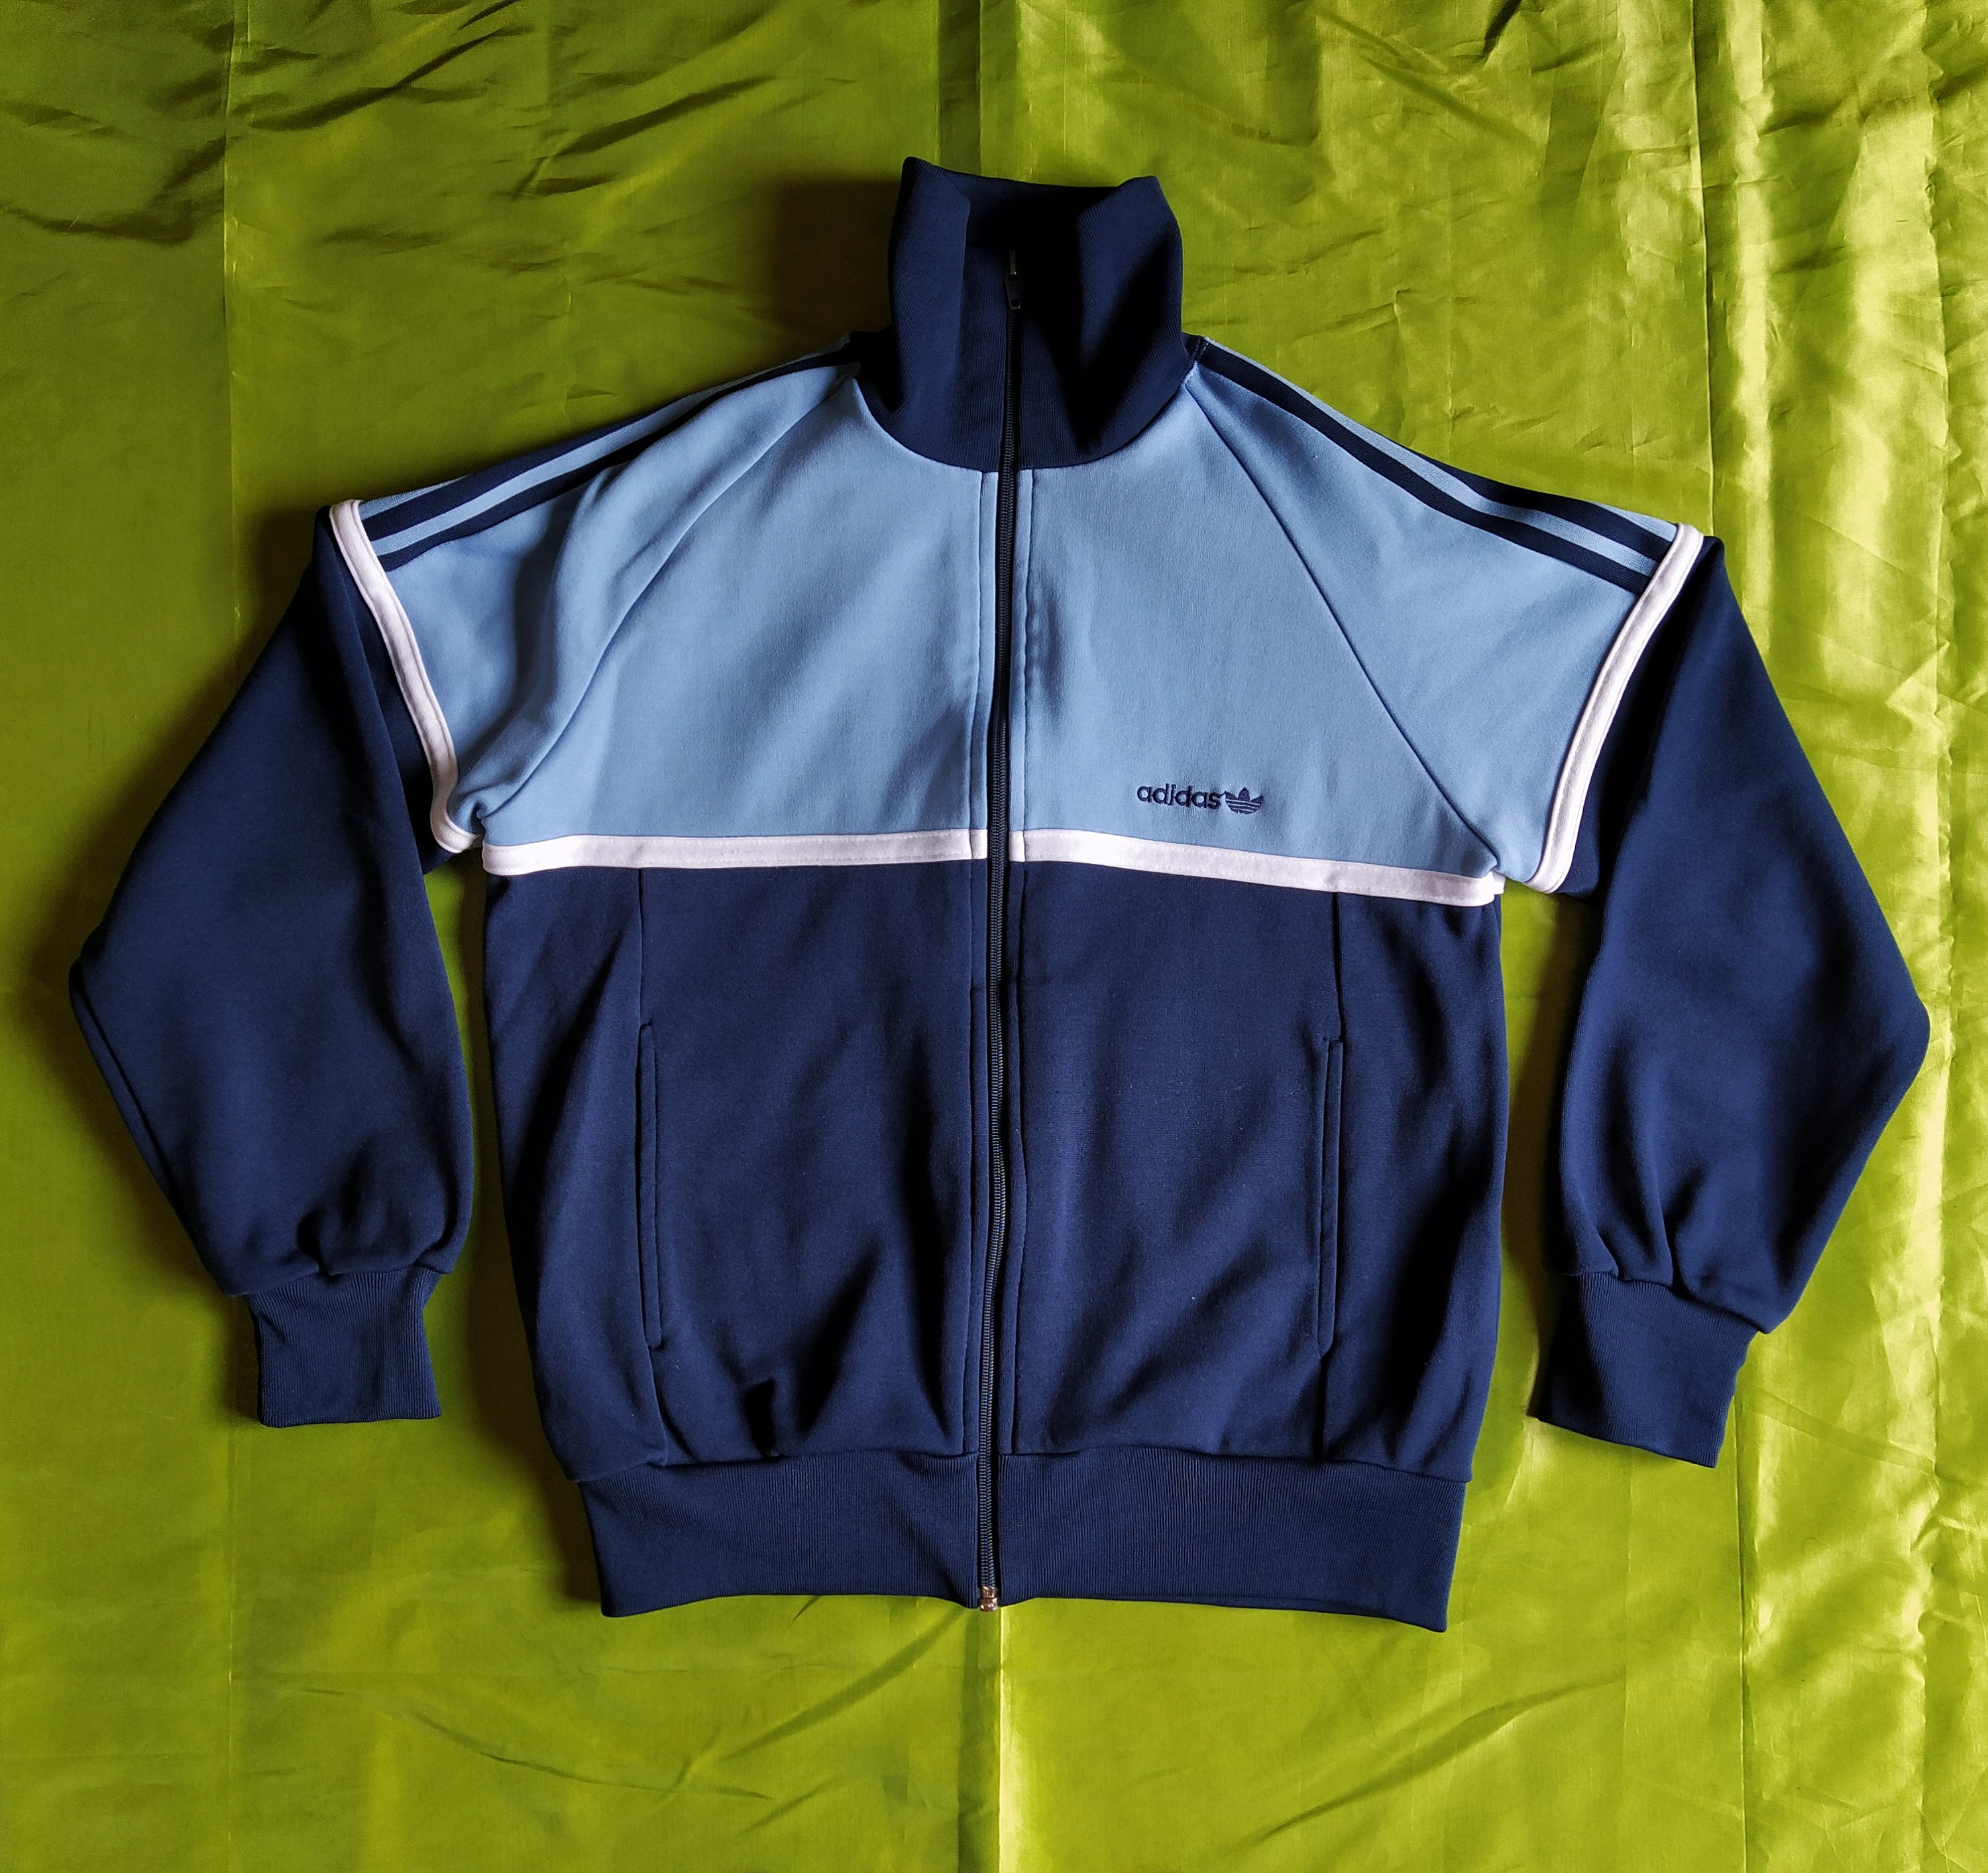 Adidas Originals Made in Korea Vintage 80s Jacket Track Top Navy